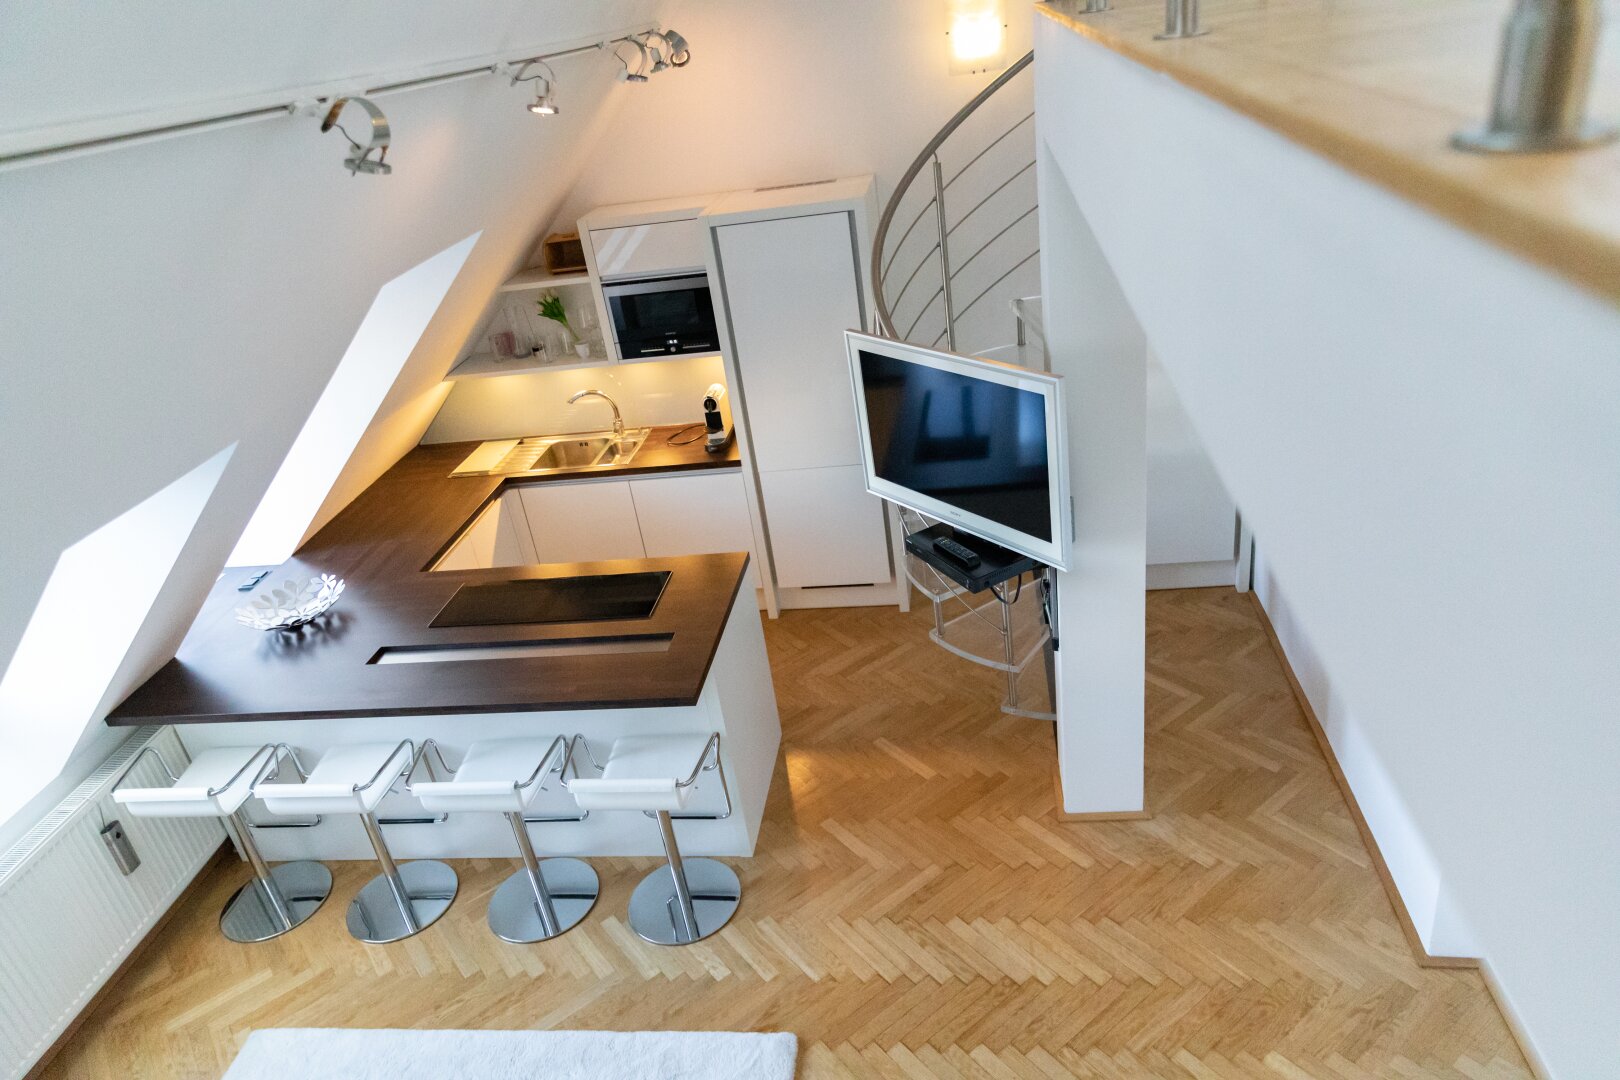 Einmalige Dachgeschoß-Maisonette-Wohnung im 9. Bezirk mit Panoramablick und Sonnenterrasse zu kaufen!